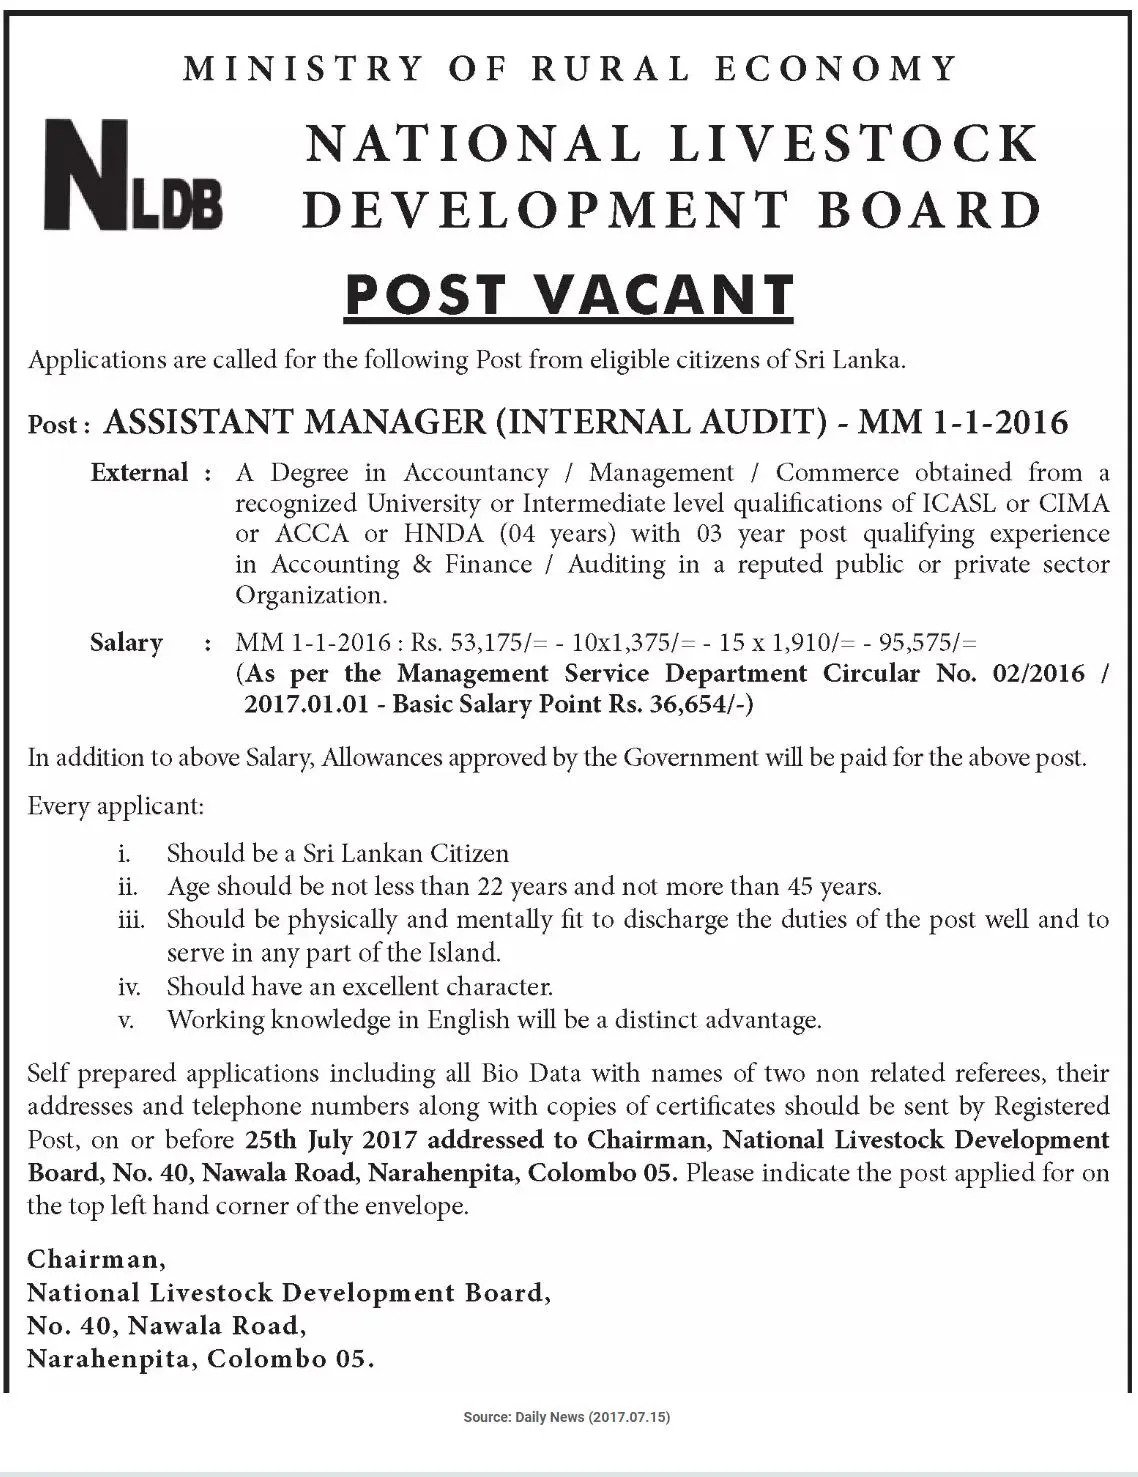 Assistant Manager (Internal Audit) - National Livestock Development Board